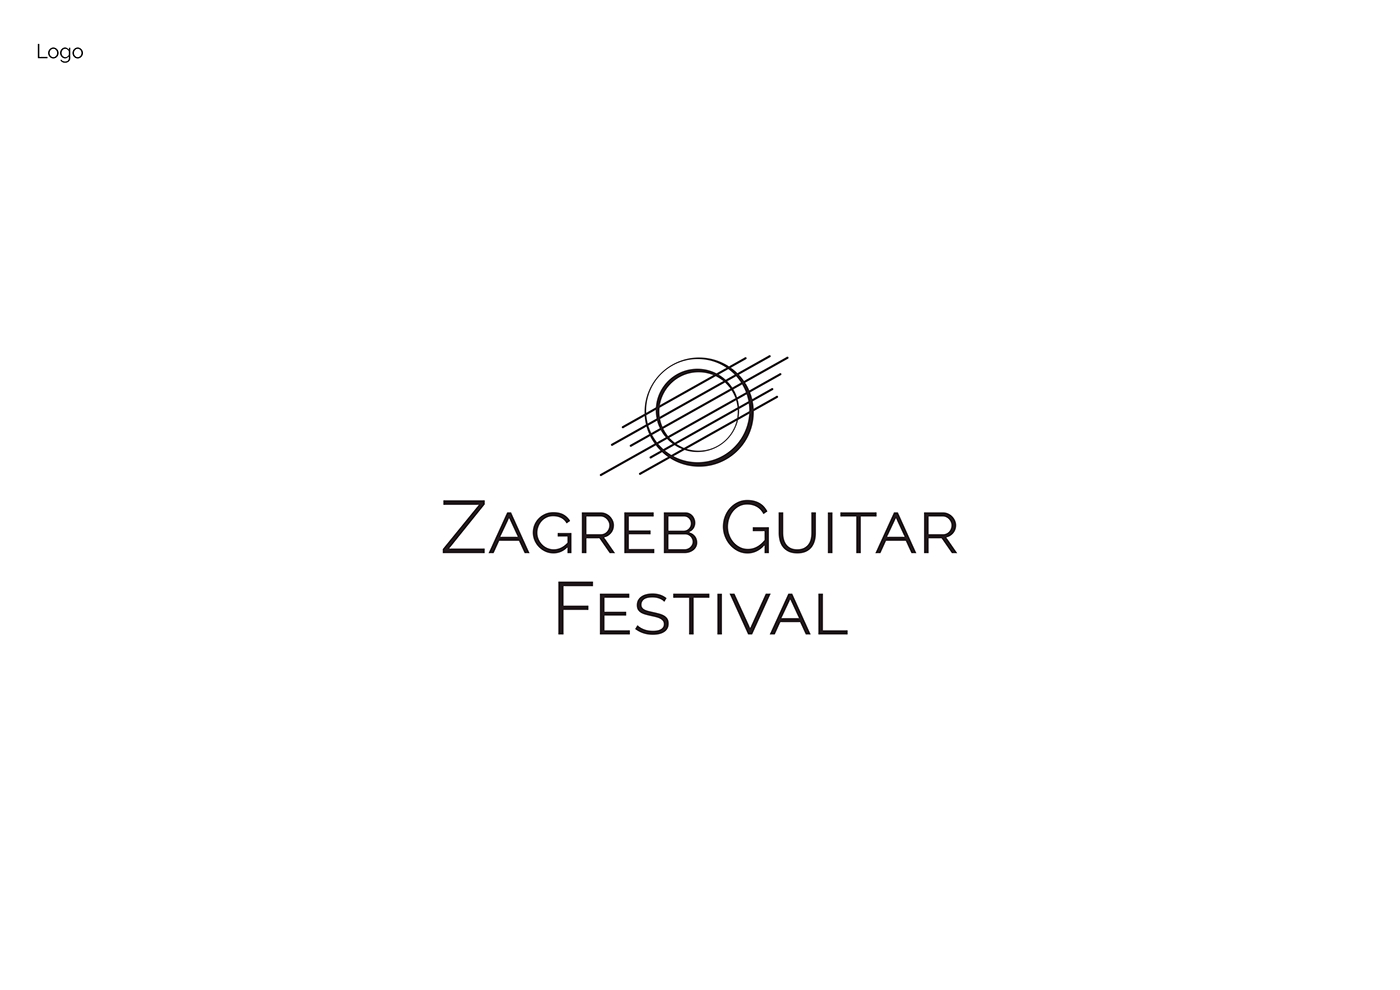 visual identity visual identity design zagreb guitar guitar festival zagreb festival logo guitar logo festival logo